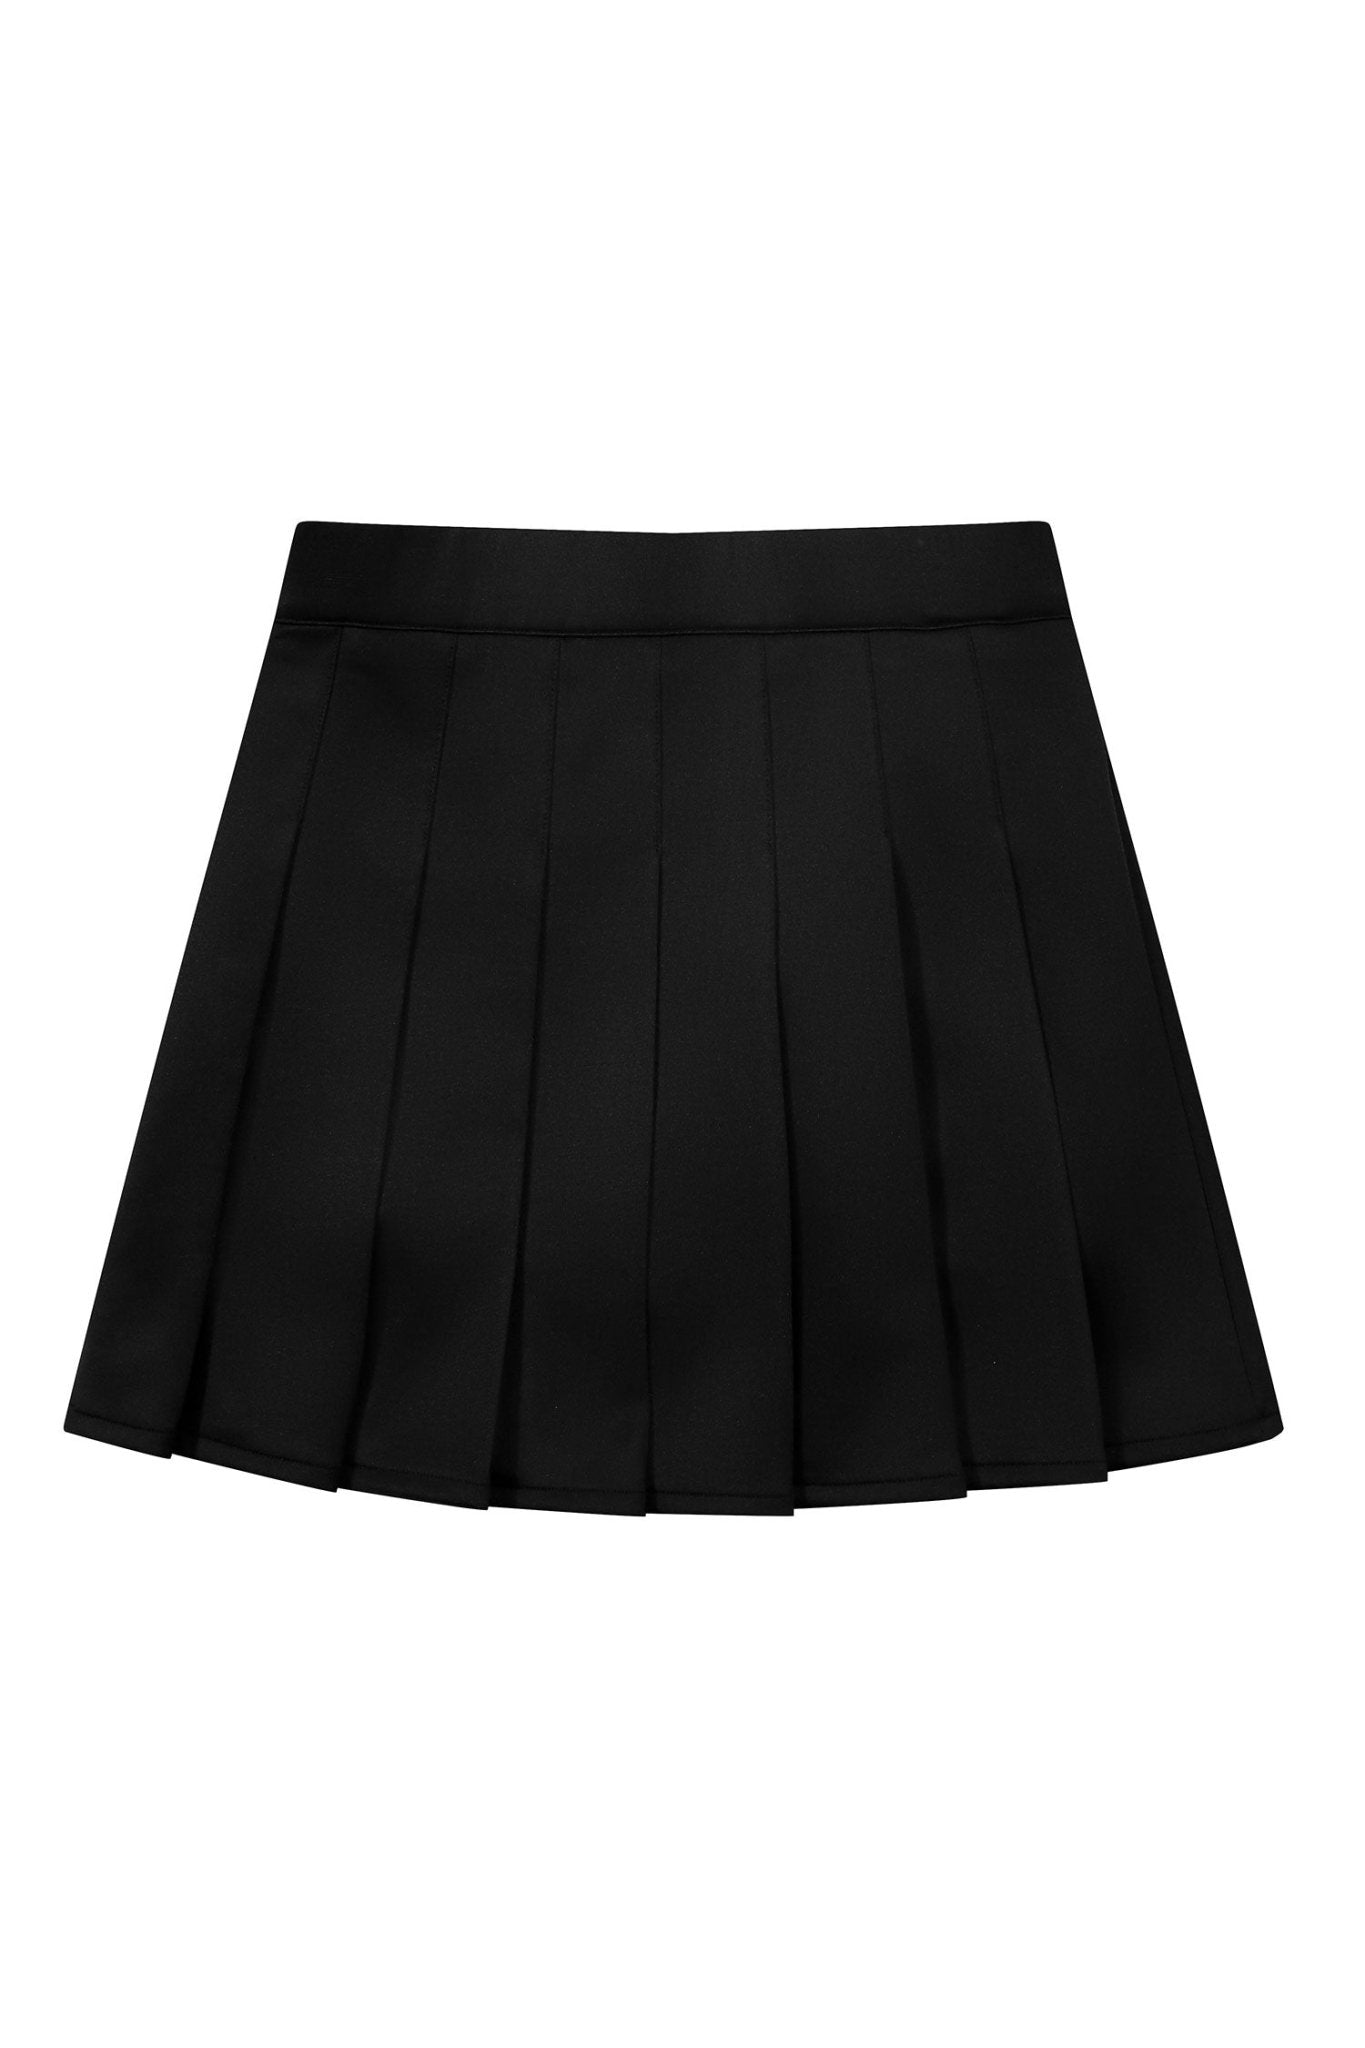 Malibu Tennis Skirt - Magnlens